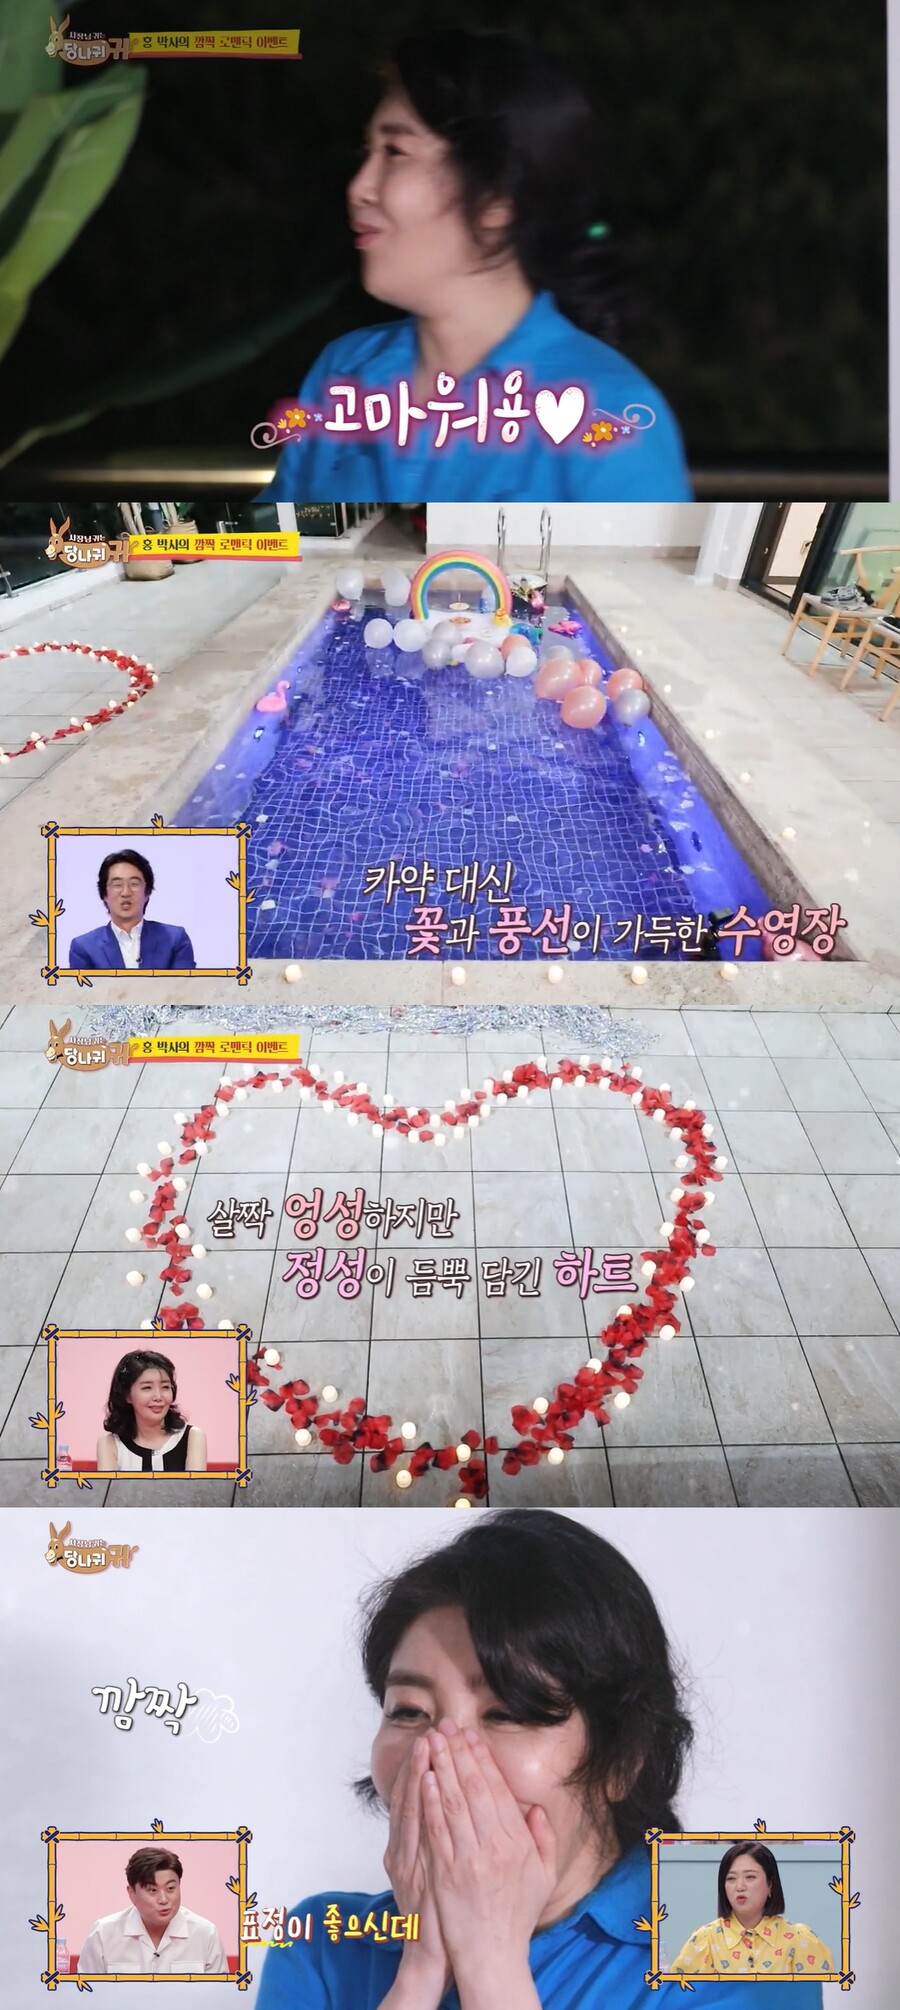 ▲ KBS2 예능 '사장님 귀는 당나귀 귀' 방송 화면. 출처| KBS